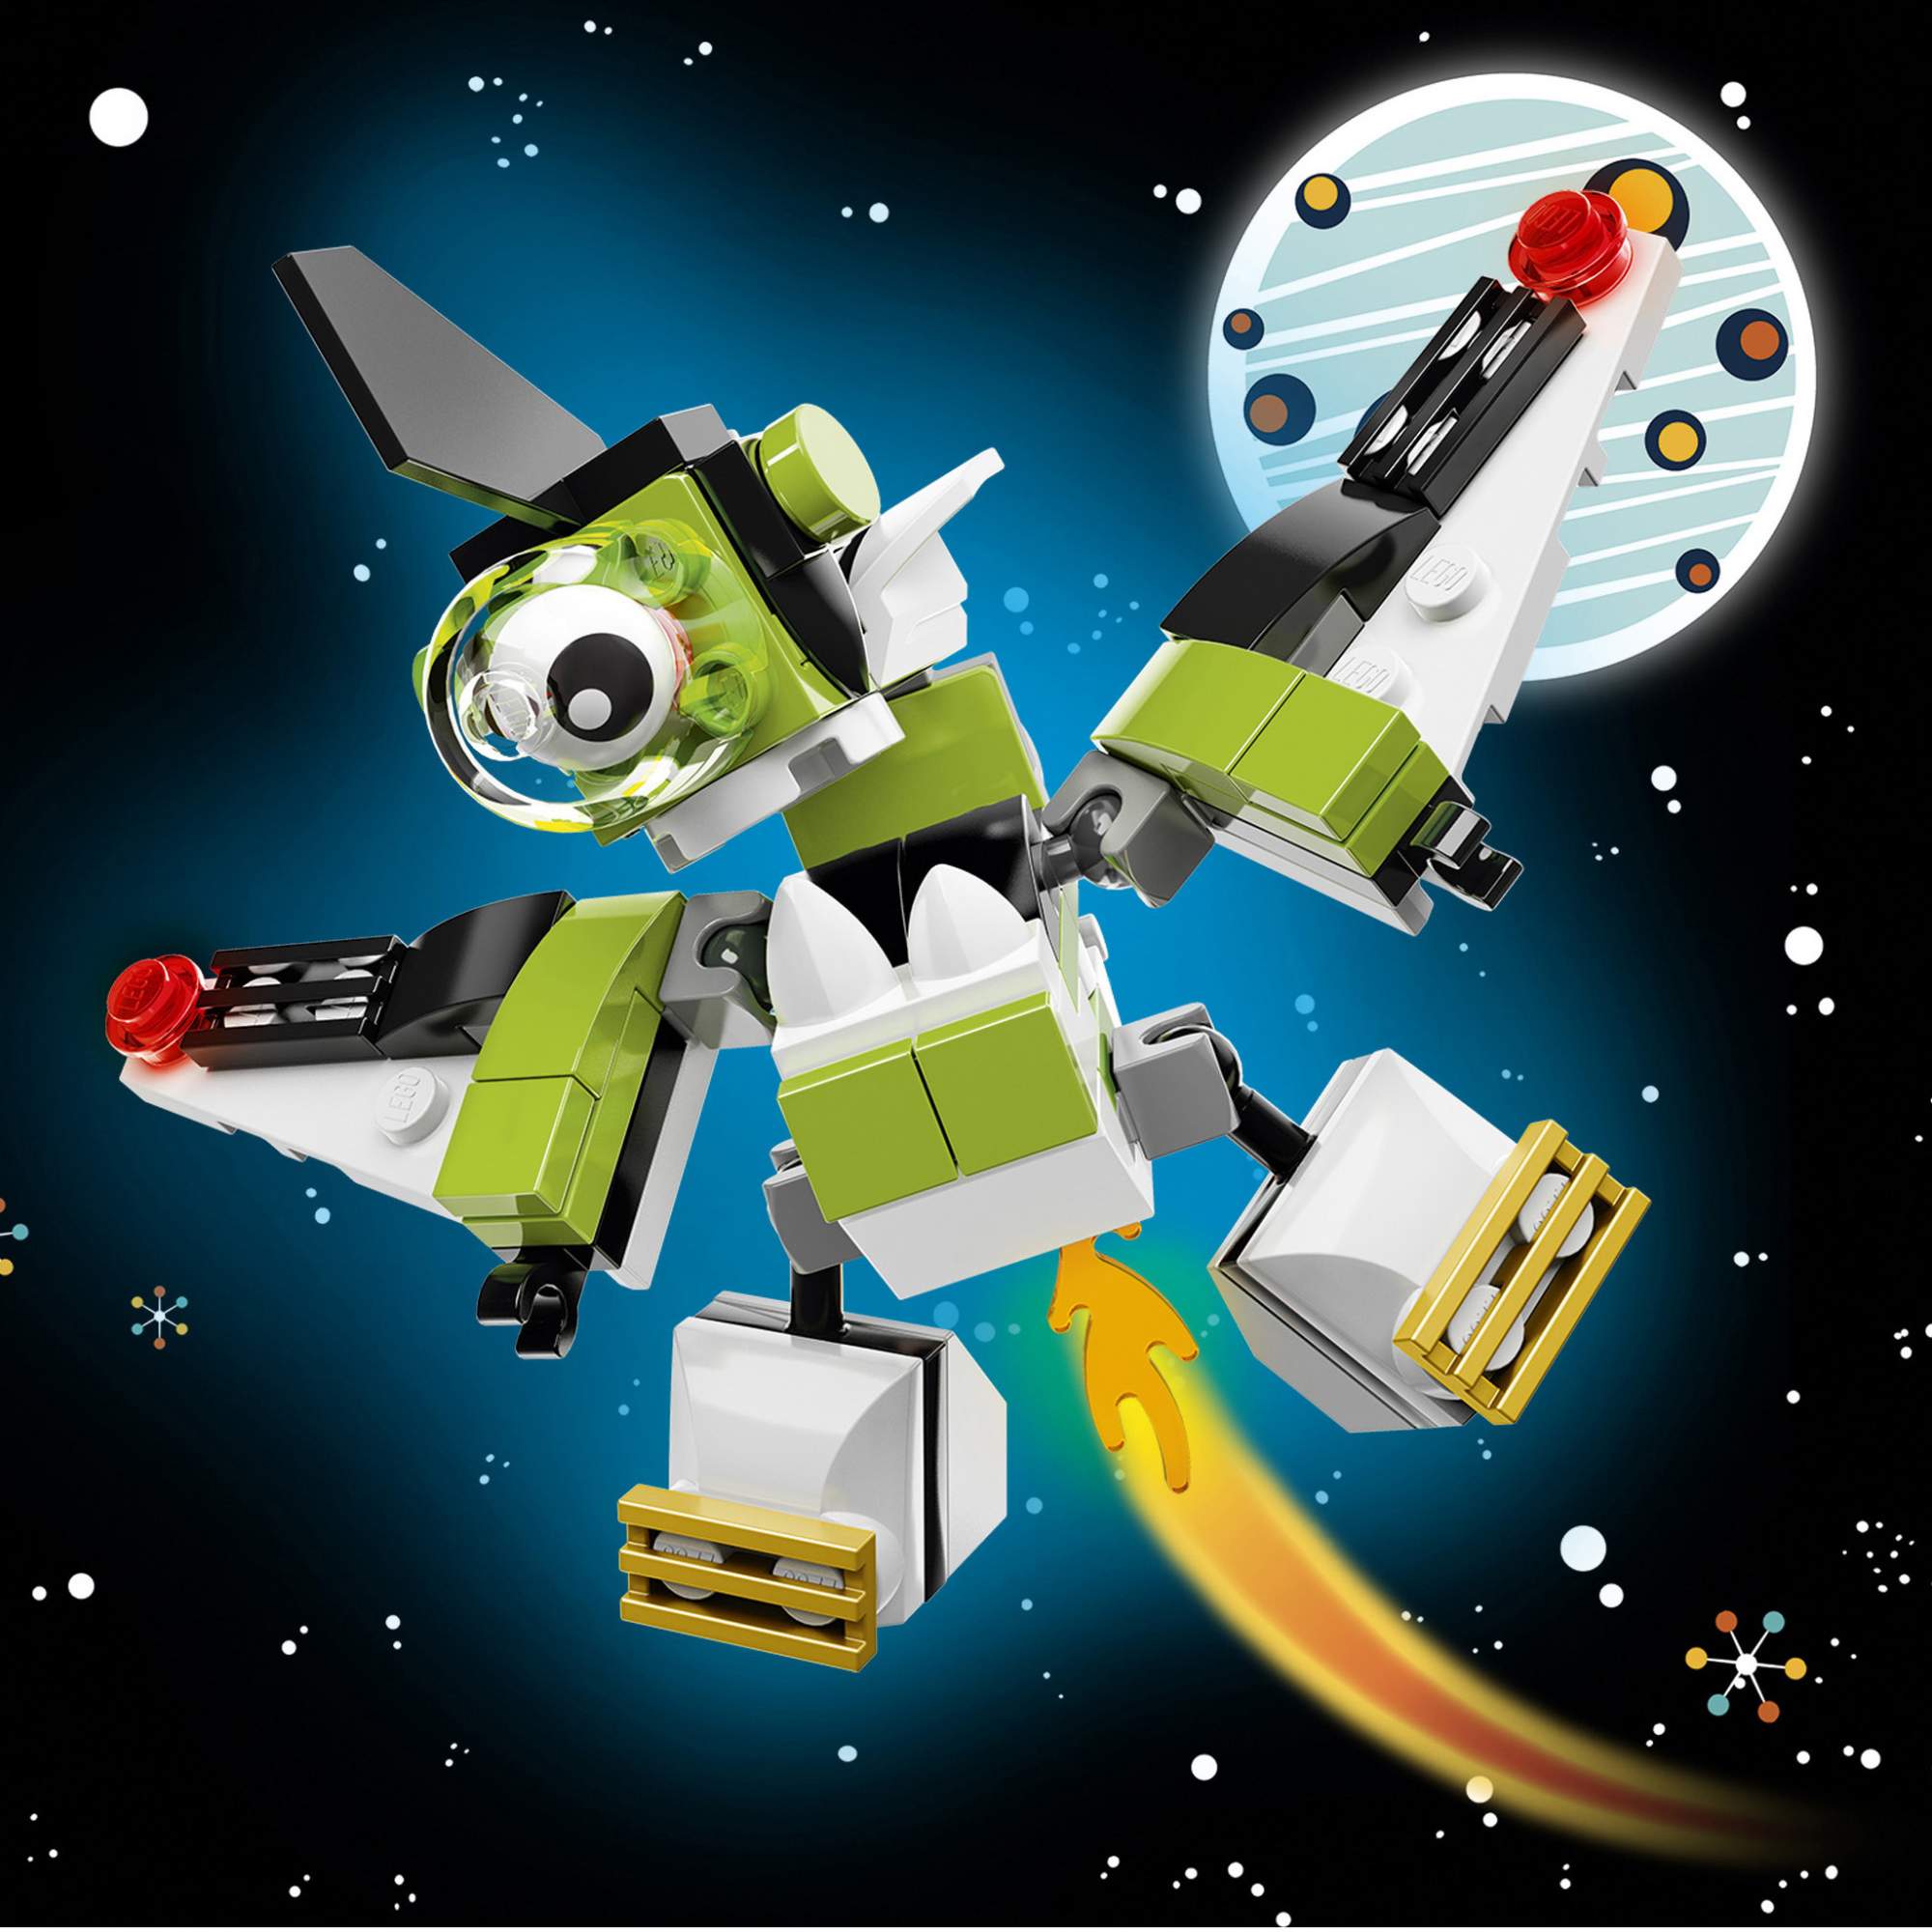 Конструктор LEGO Mixels Никспут (41528)